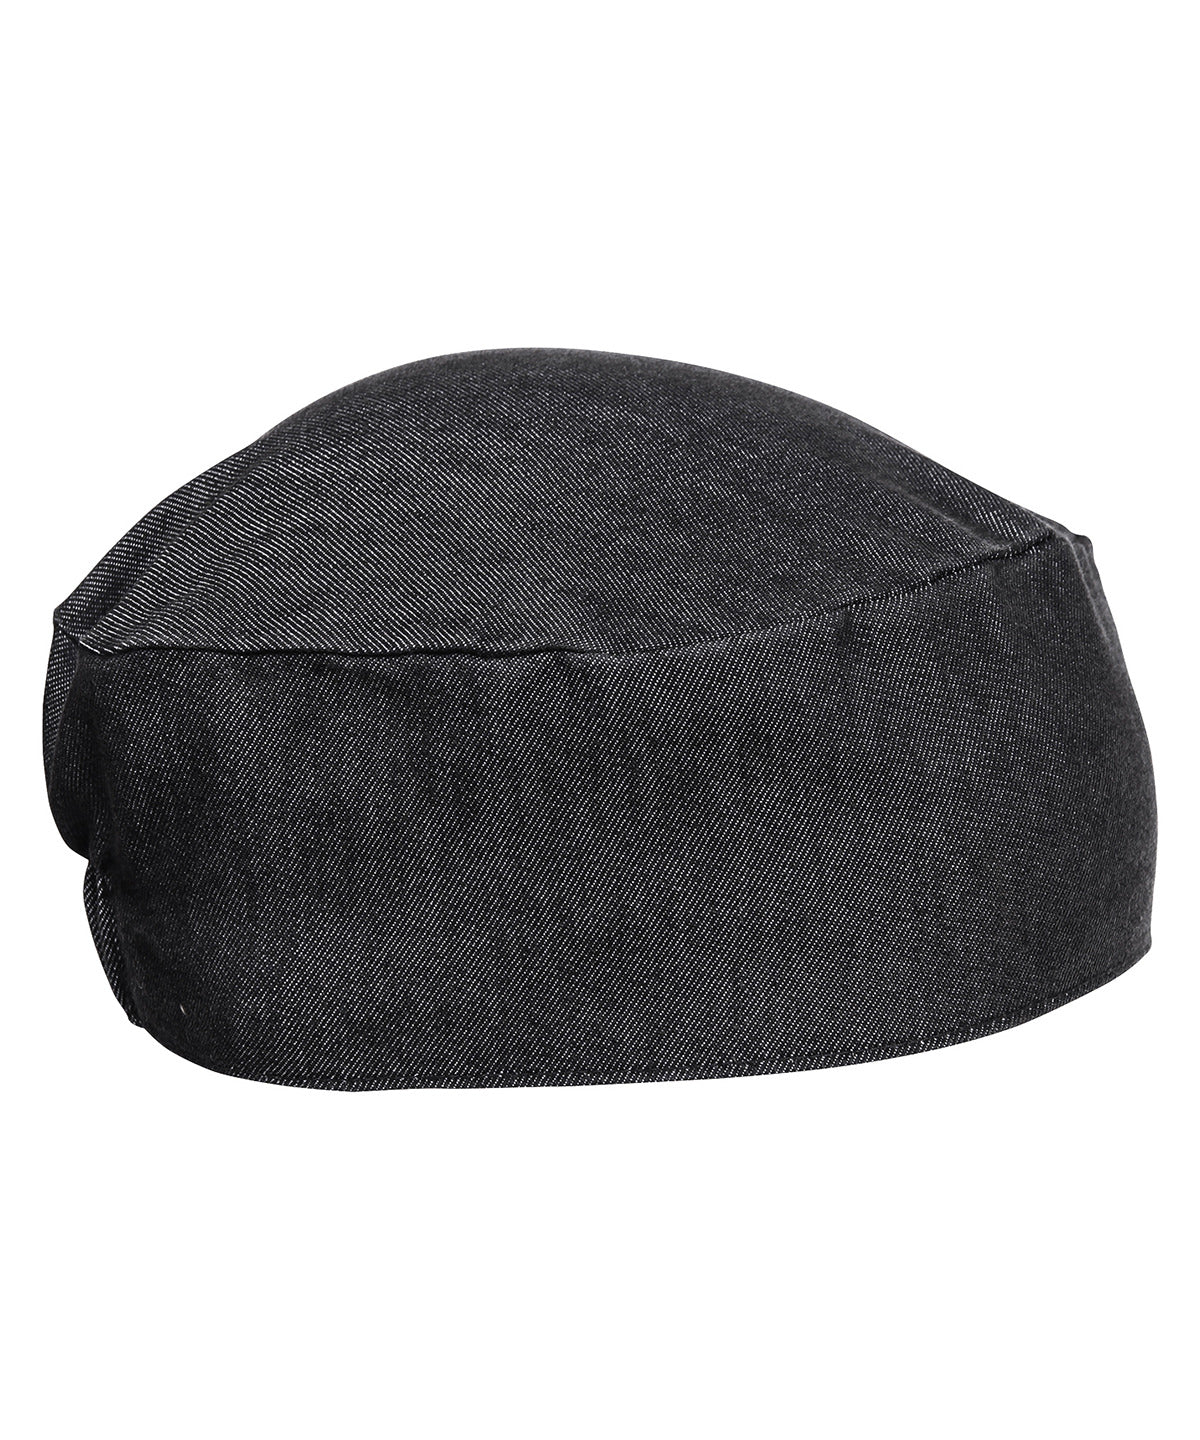 Chefs skull cap | Black Denim